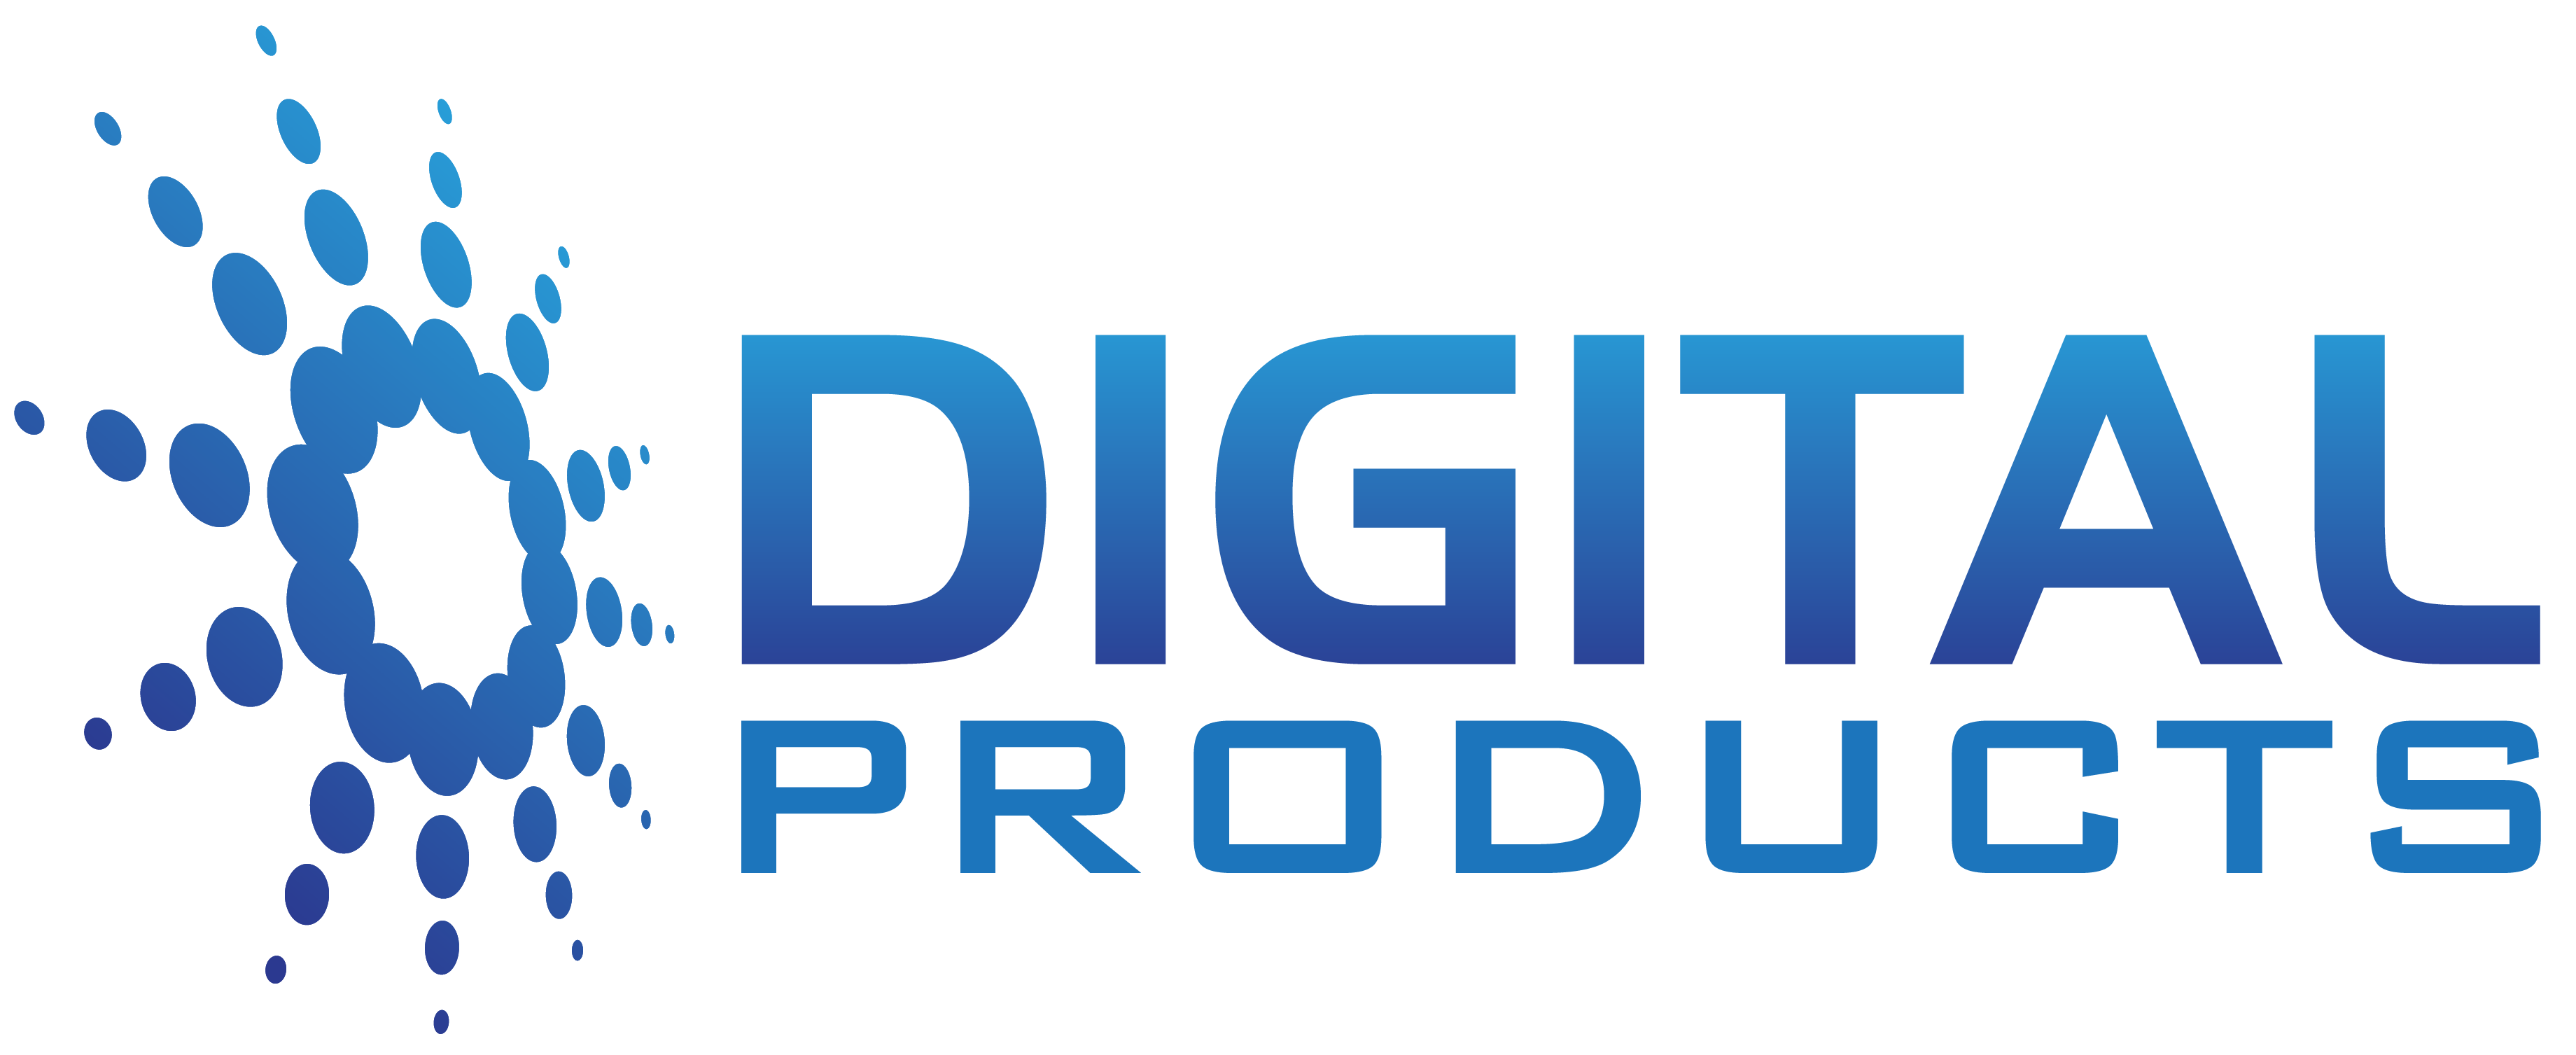 Digital продукты. Логотип цифровые товары. Диджитал товары. Цифровые продукты картинка.